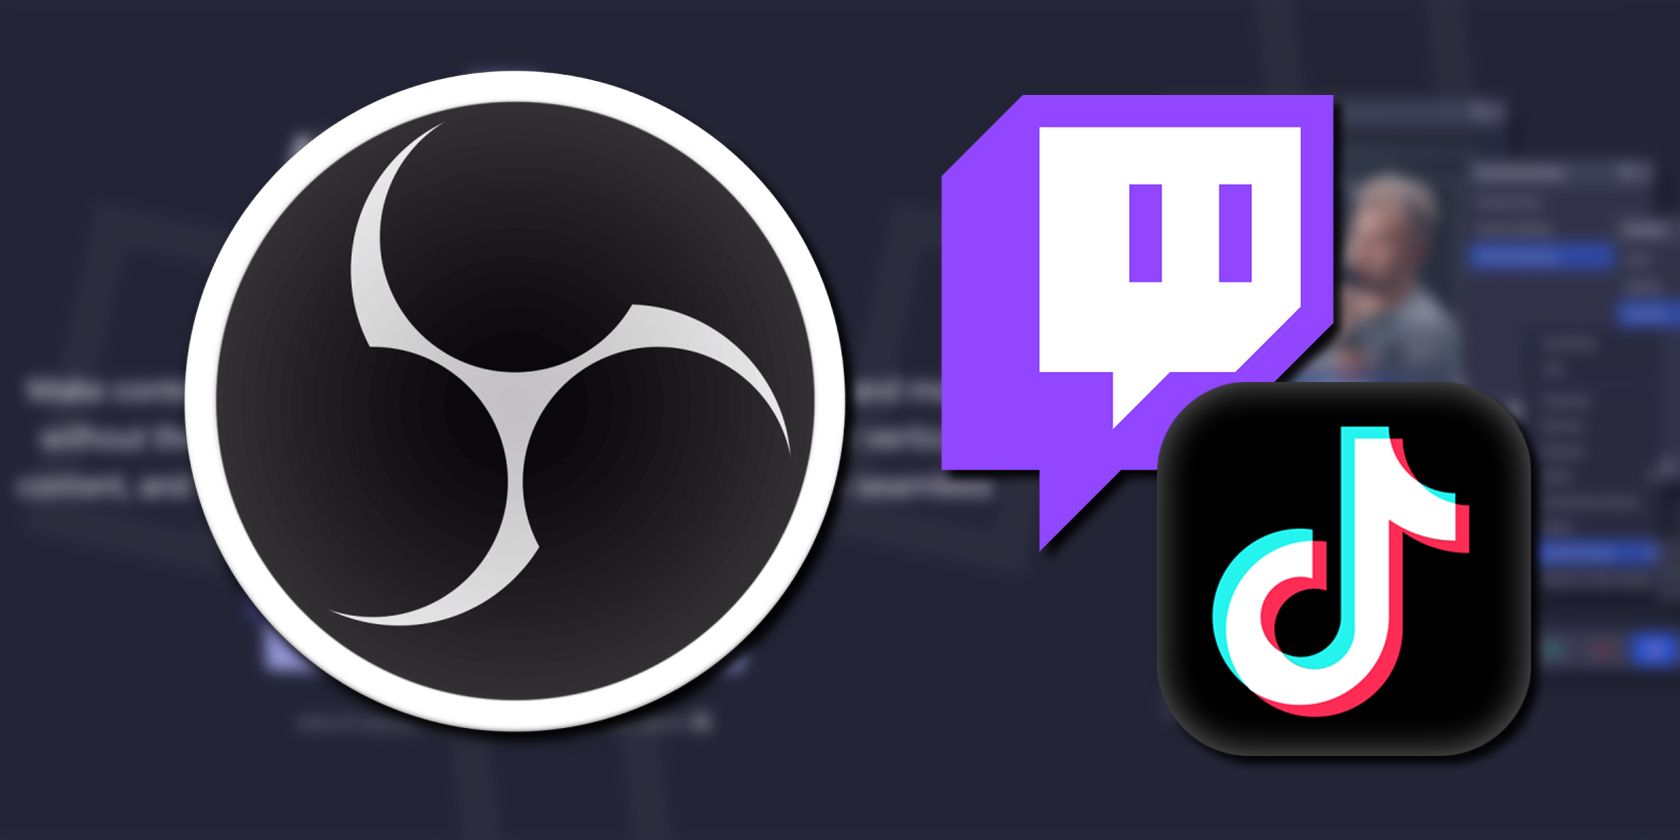 OBS Logo next to Twitch and TIkTok Logos